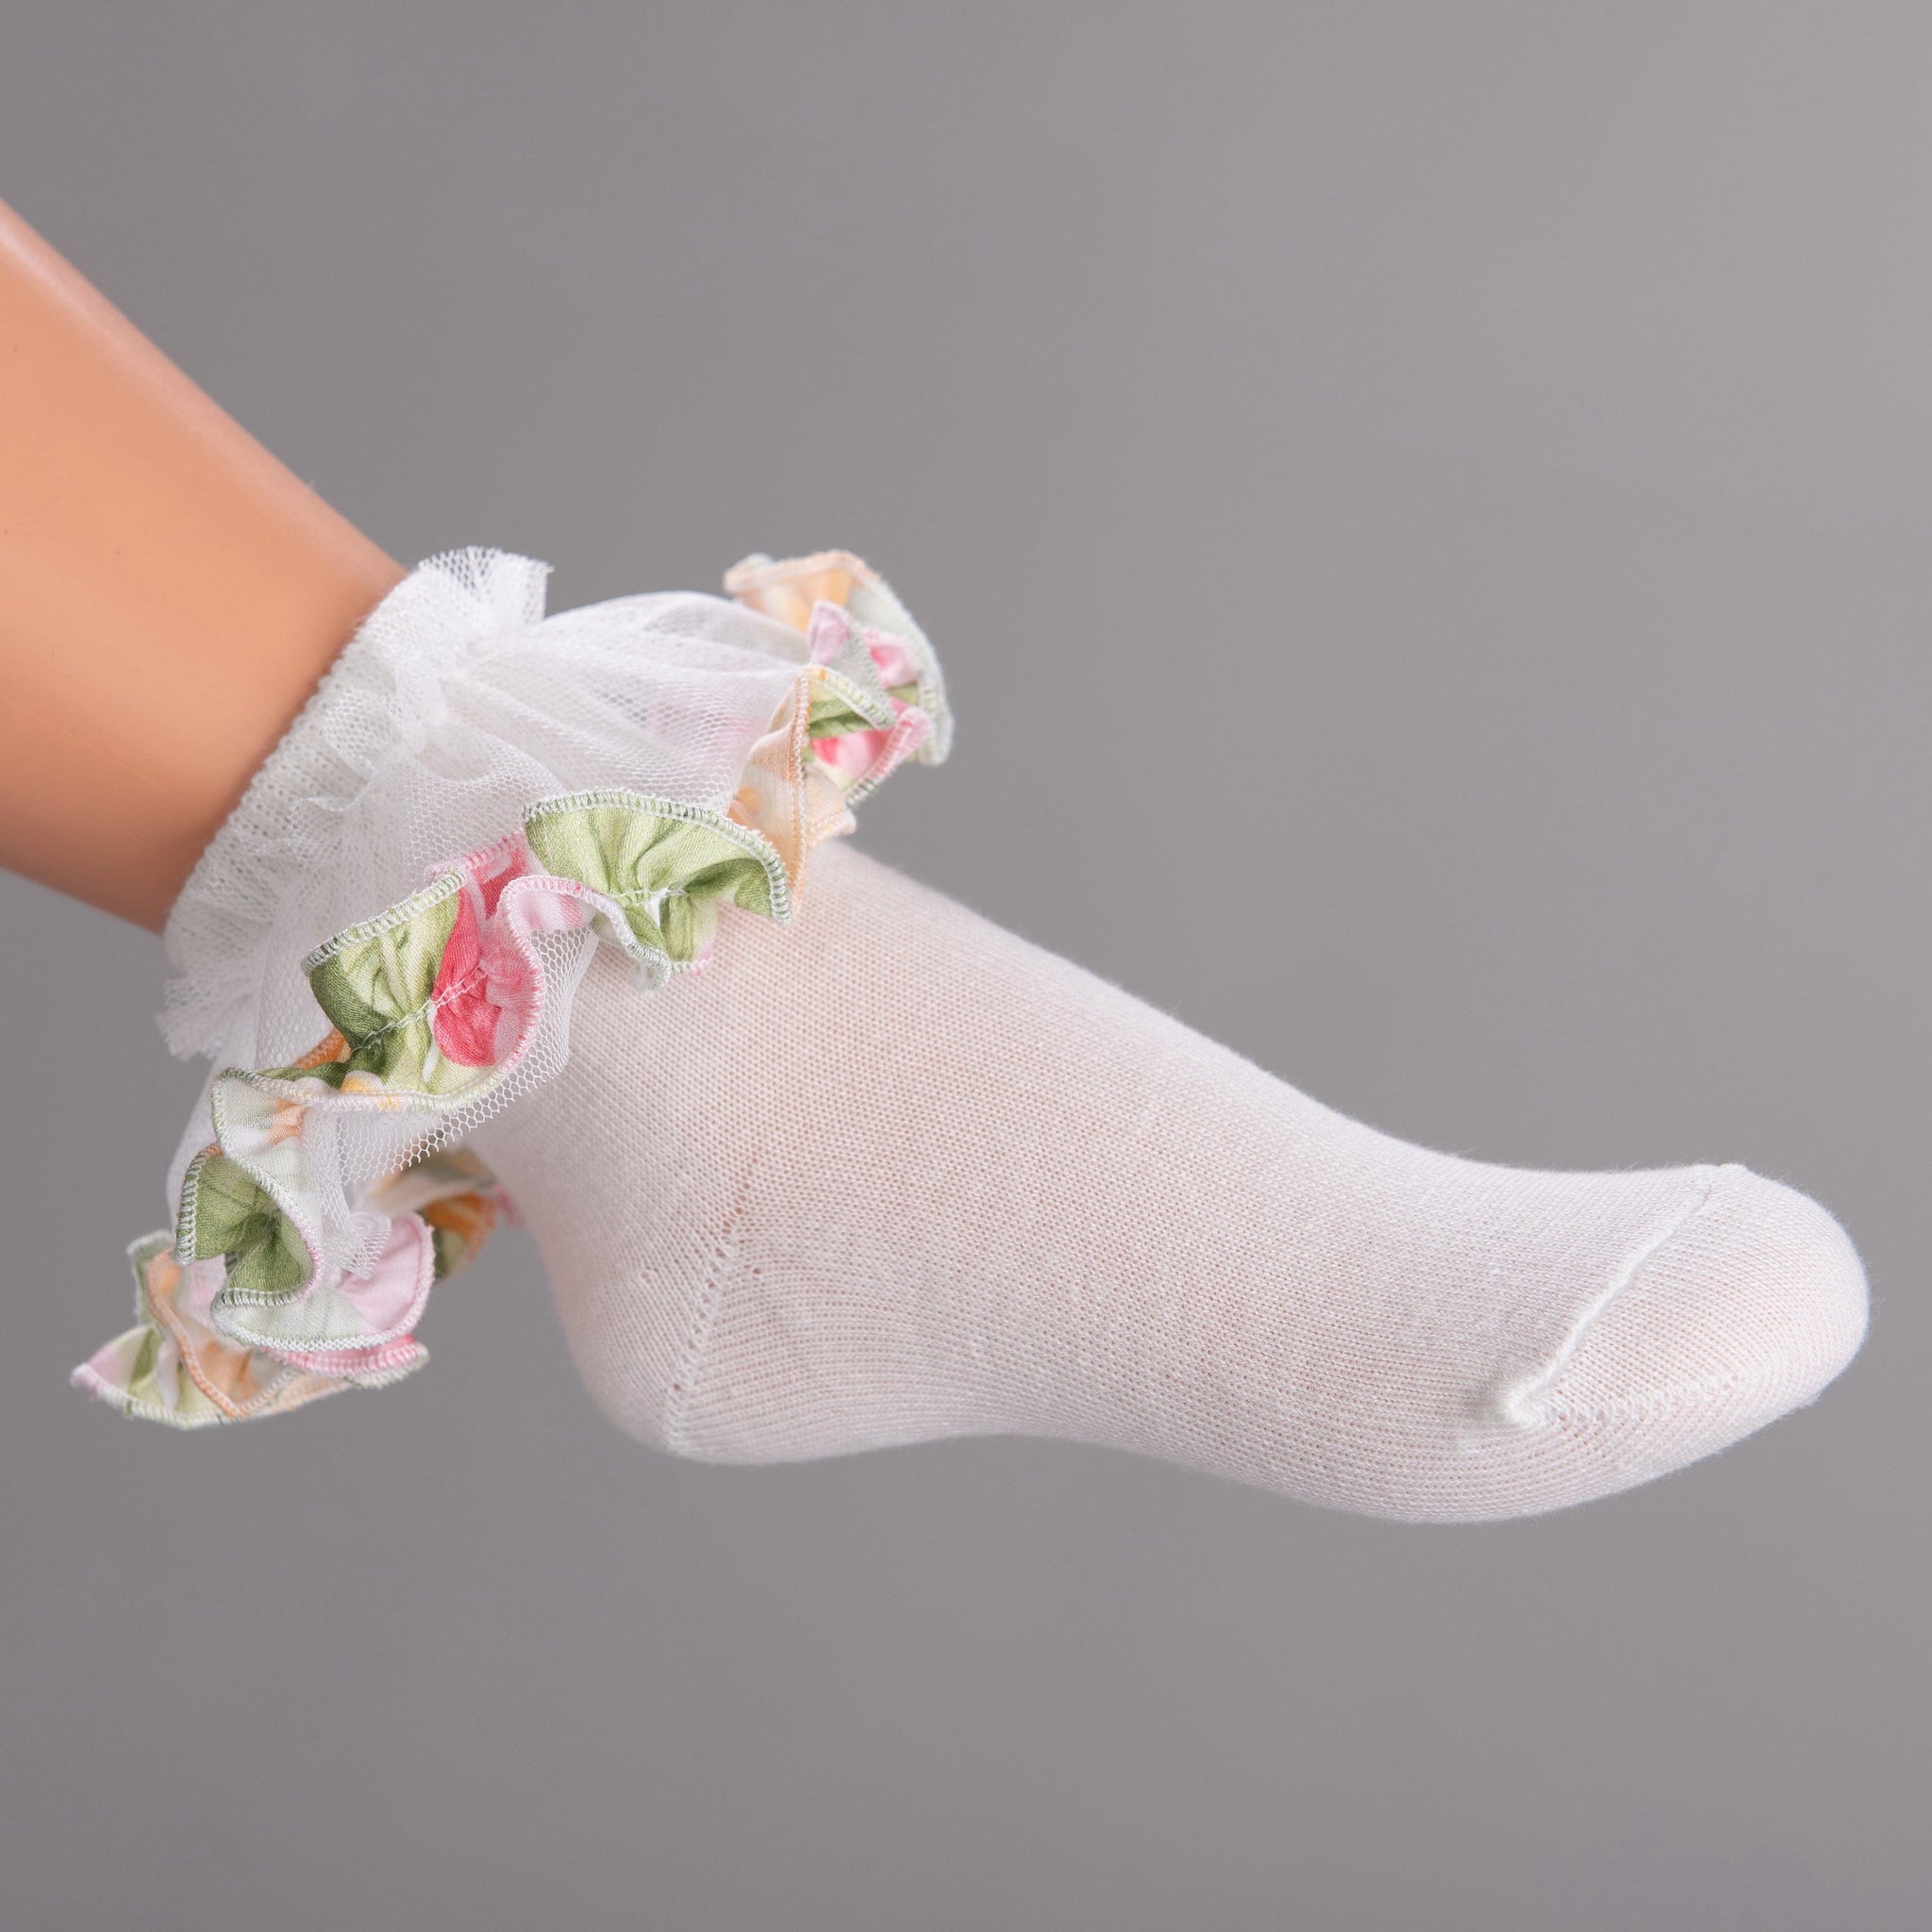 Daga One Size 24063 Daga Baby Girls White Floral Frill Socks